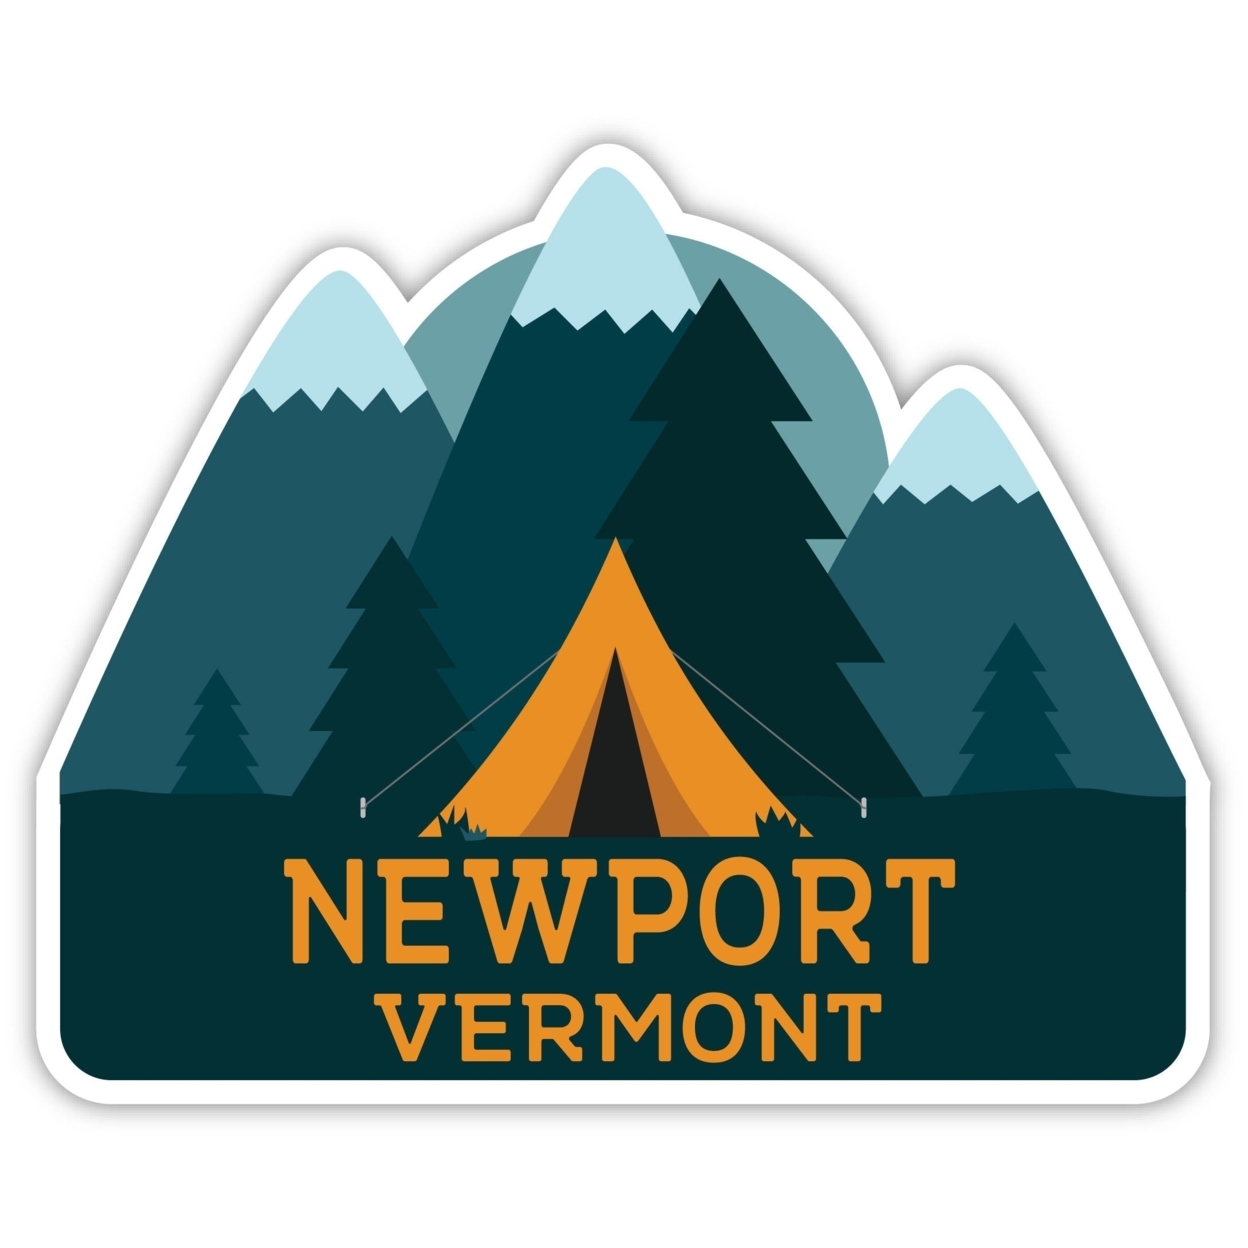 Newport Vermont Souvenir Decorative Stickers (Choose Theme And Size) - Single Unit, 2-Inch, Tent